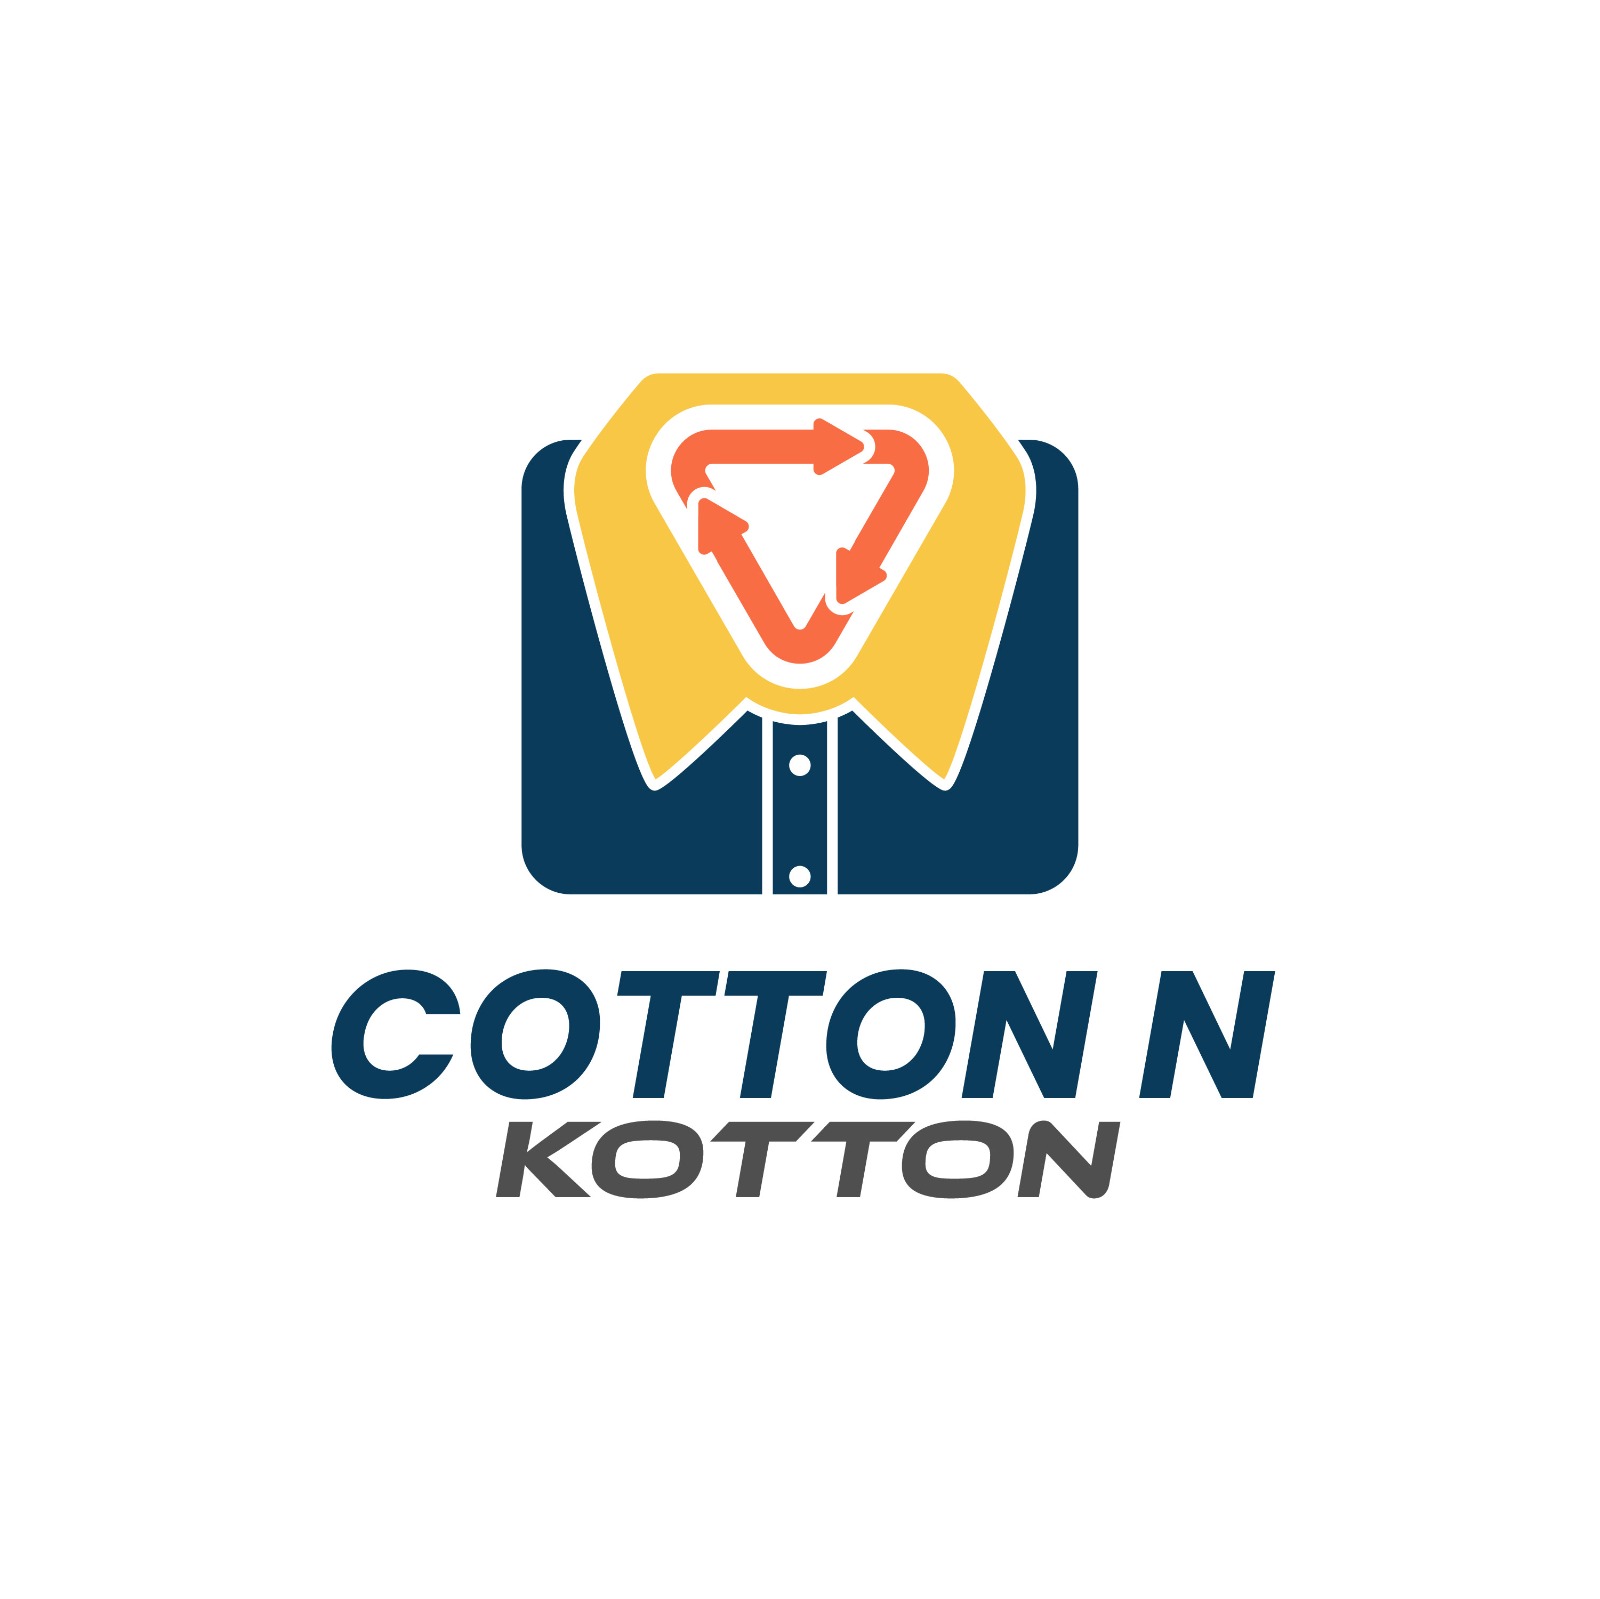 Cotton N Kotton